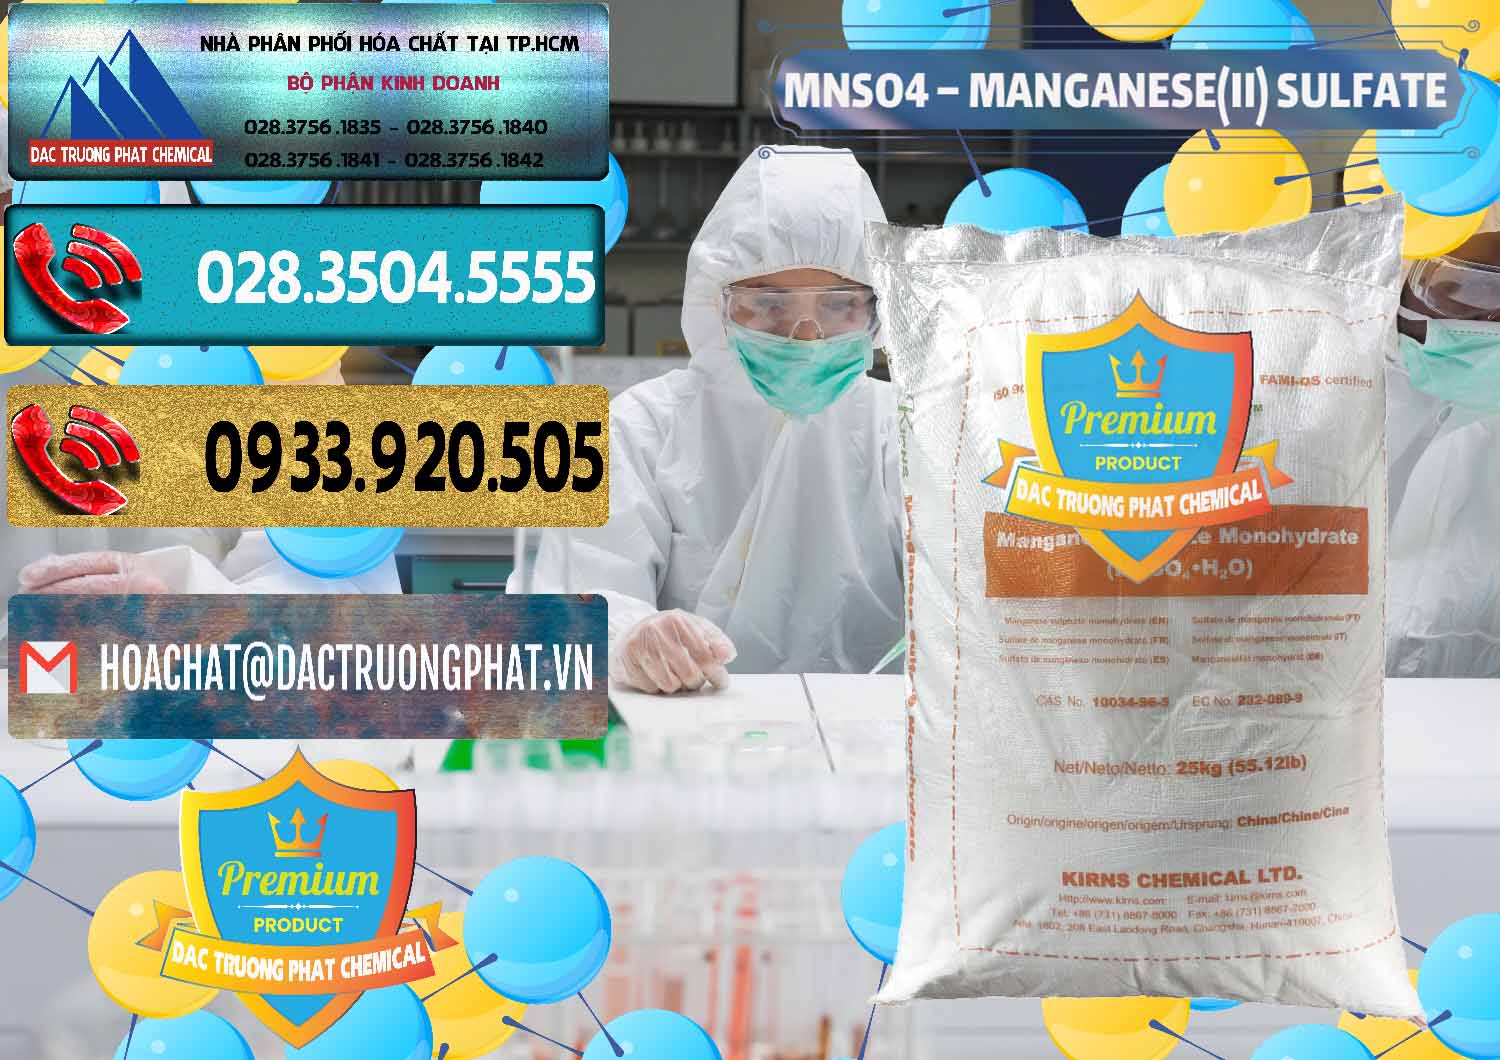 Cty chuyên cung ứng & bán MNSO4 – Manganese (II) Sulfate Kirns Trung Quốc China - 0095 - Cung cấp - bán hóa chất tại TP.HCM - hoachatdetnhuom.com